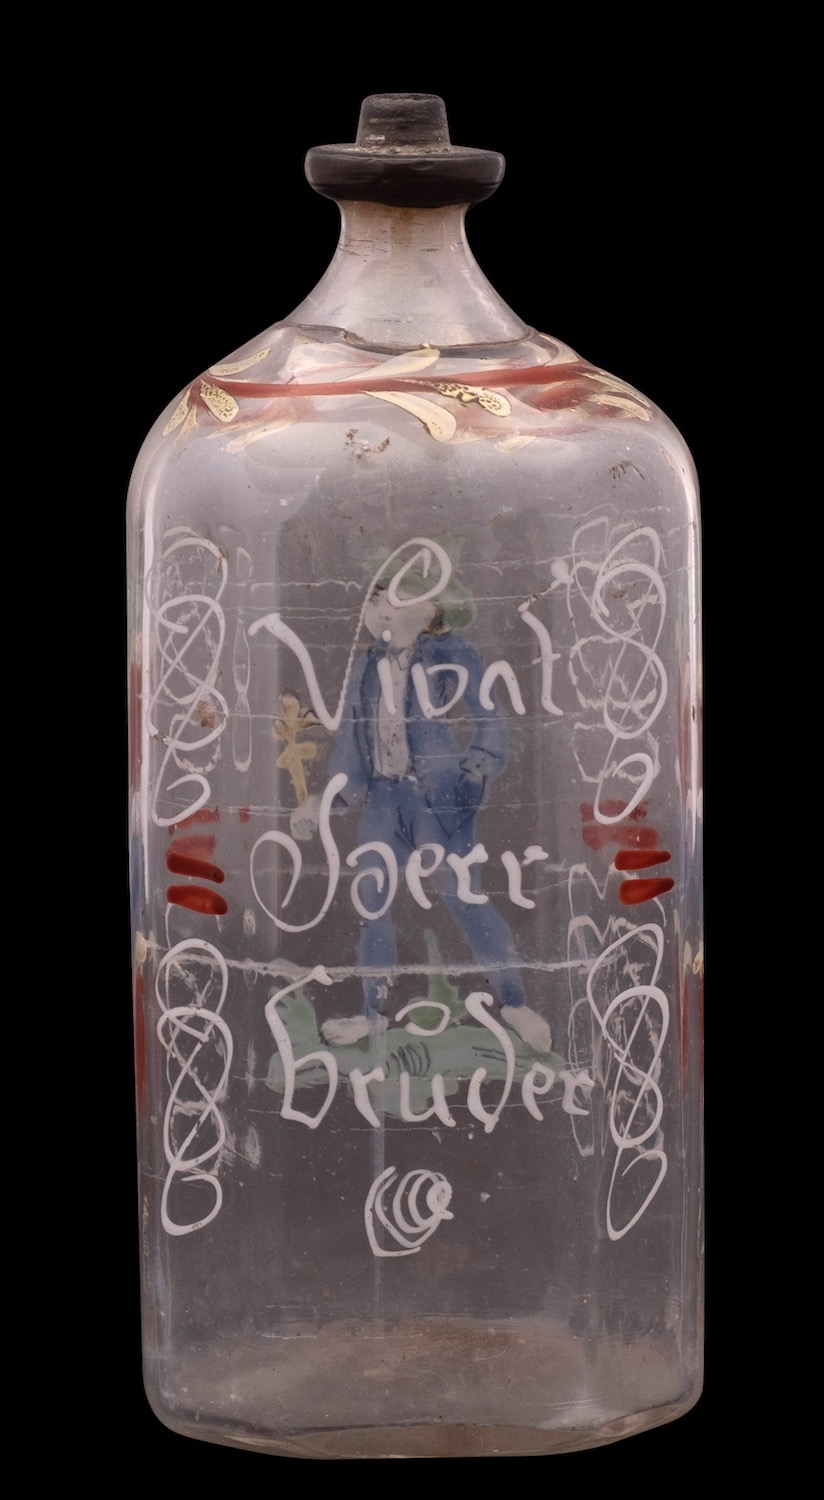 A German enamelled glass flask, 18th century inscribed 'Vivat Joerr Bruder' [long live brother], - Image 2 of 2